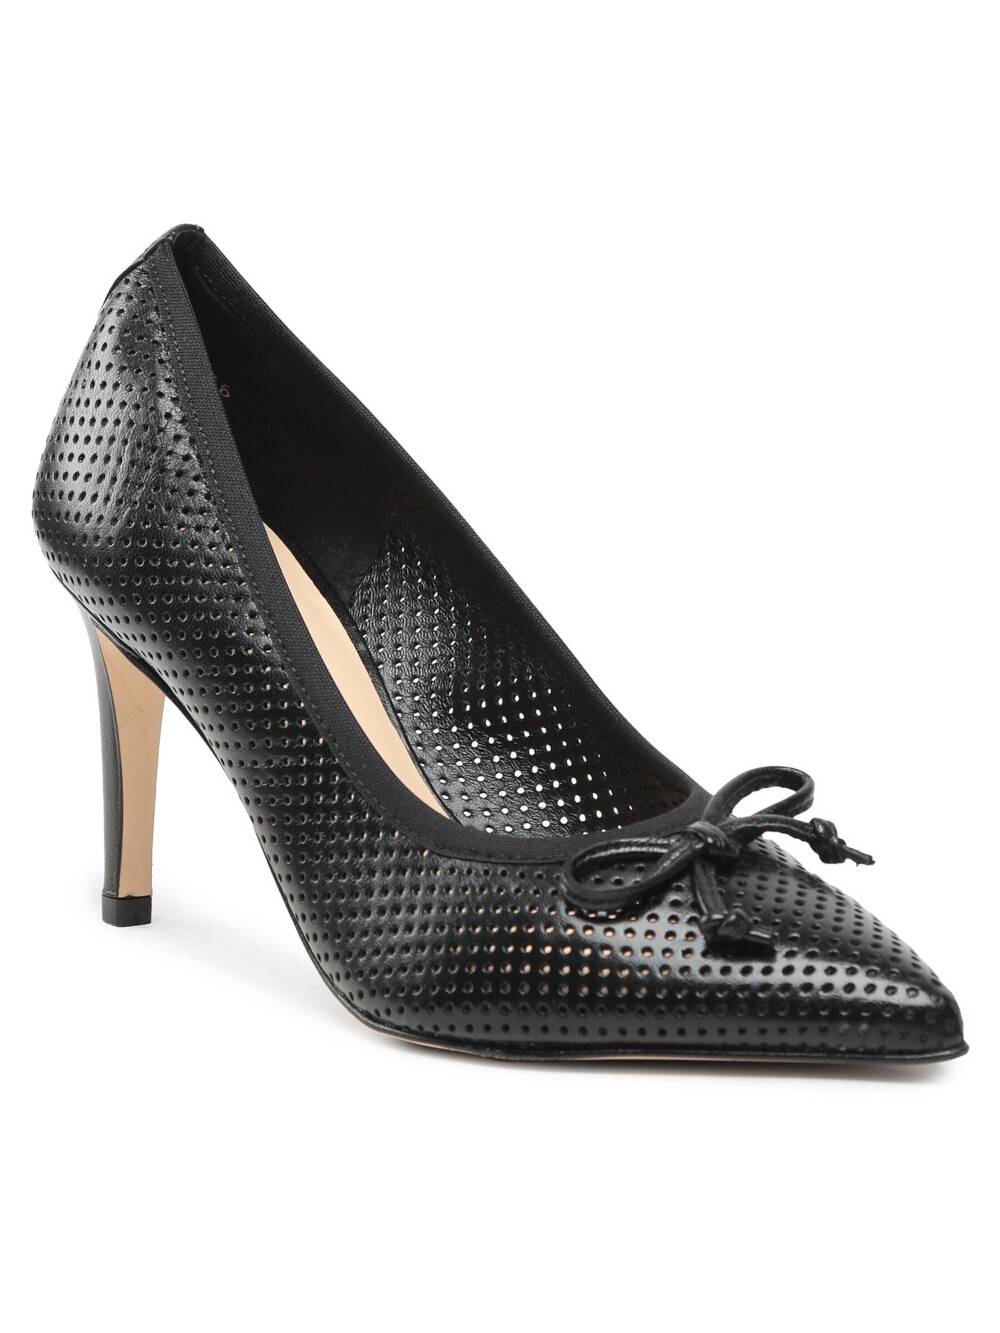 Solo Femme – Talons aiguilles Noir à <del>107 €</del> 57 € chez Chaussures.fr